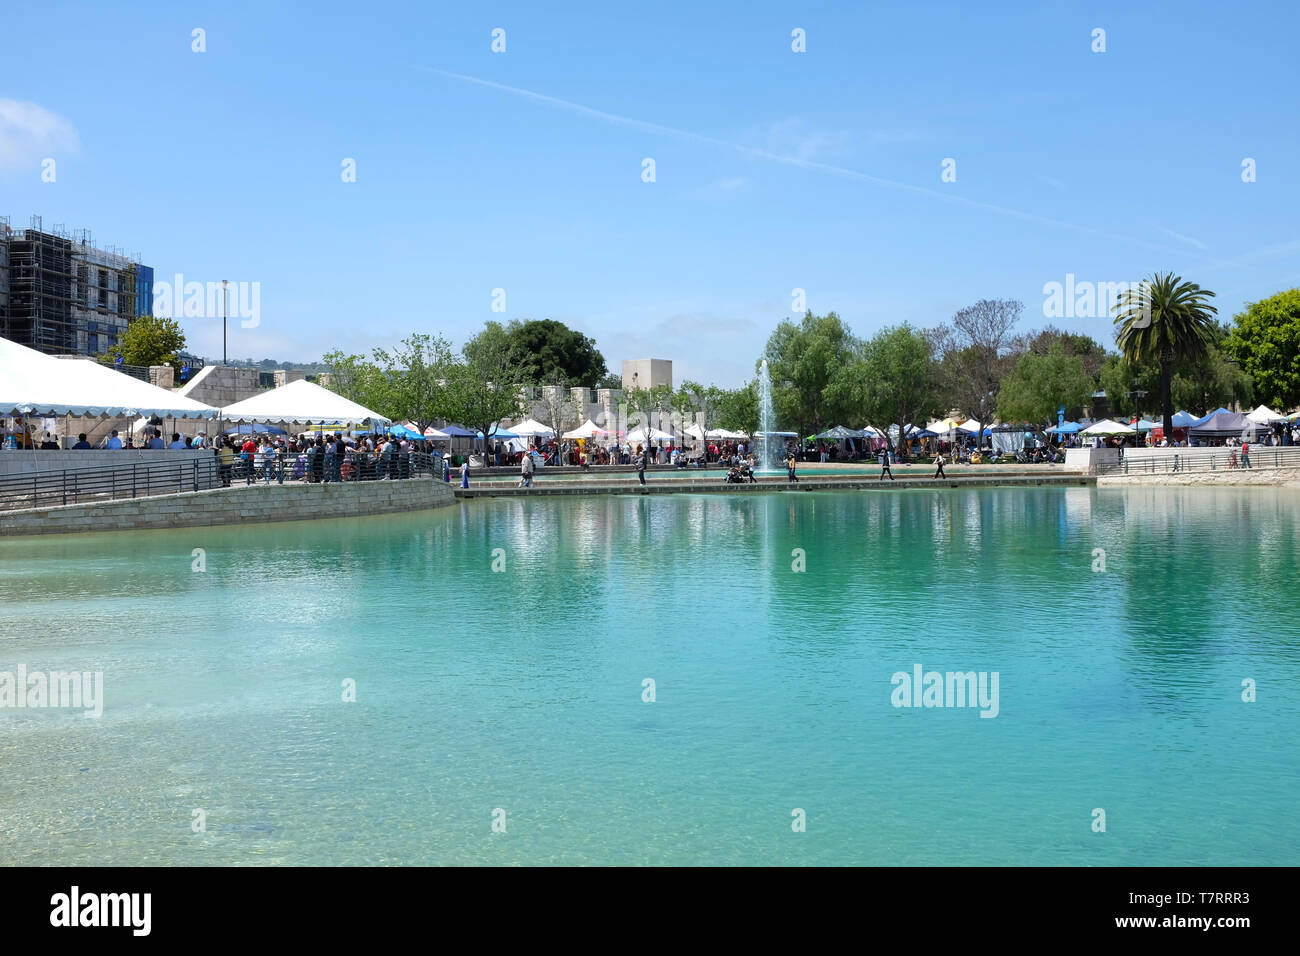 ALISO Viejo, Kalifornien, 4. Mai 2019: Anzeige stände Umgebung Frieden See an der Soka Universität während der 18. jährlichen Internationalen Festivals. Stockfoto